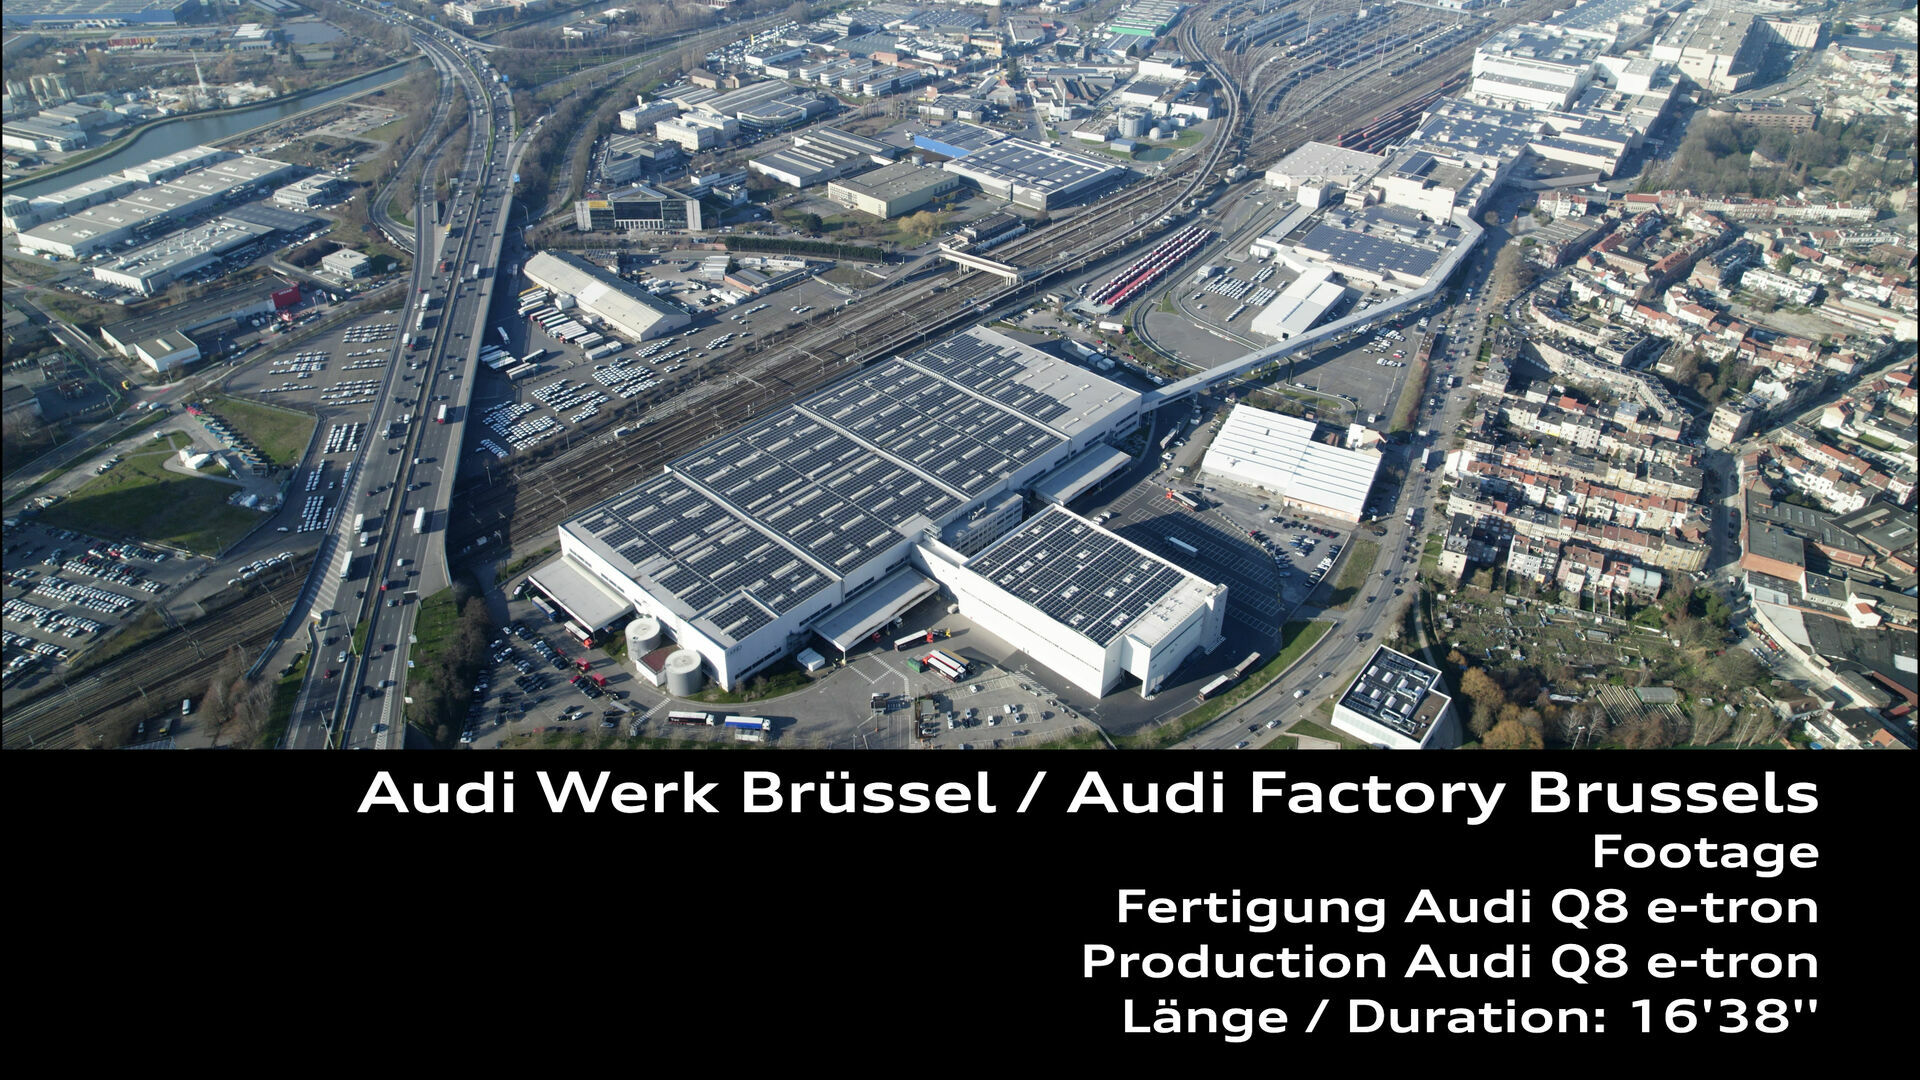 Footage: Produktion am Standort Brüssel